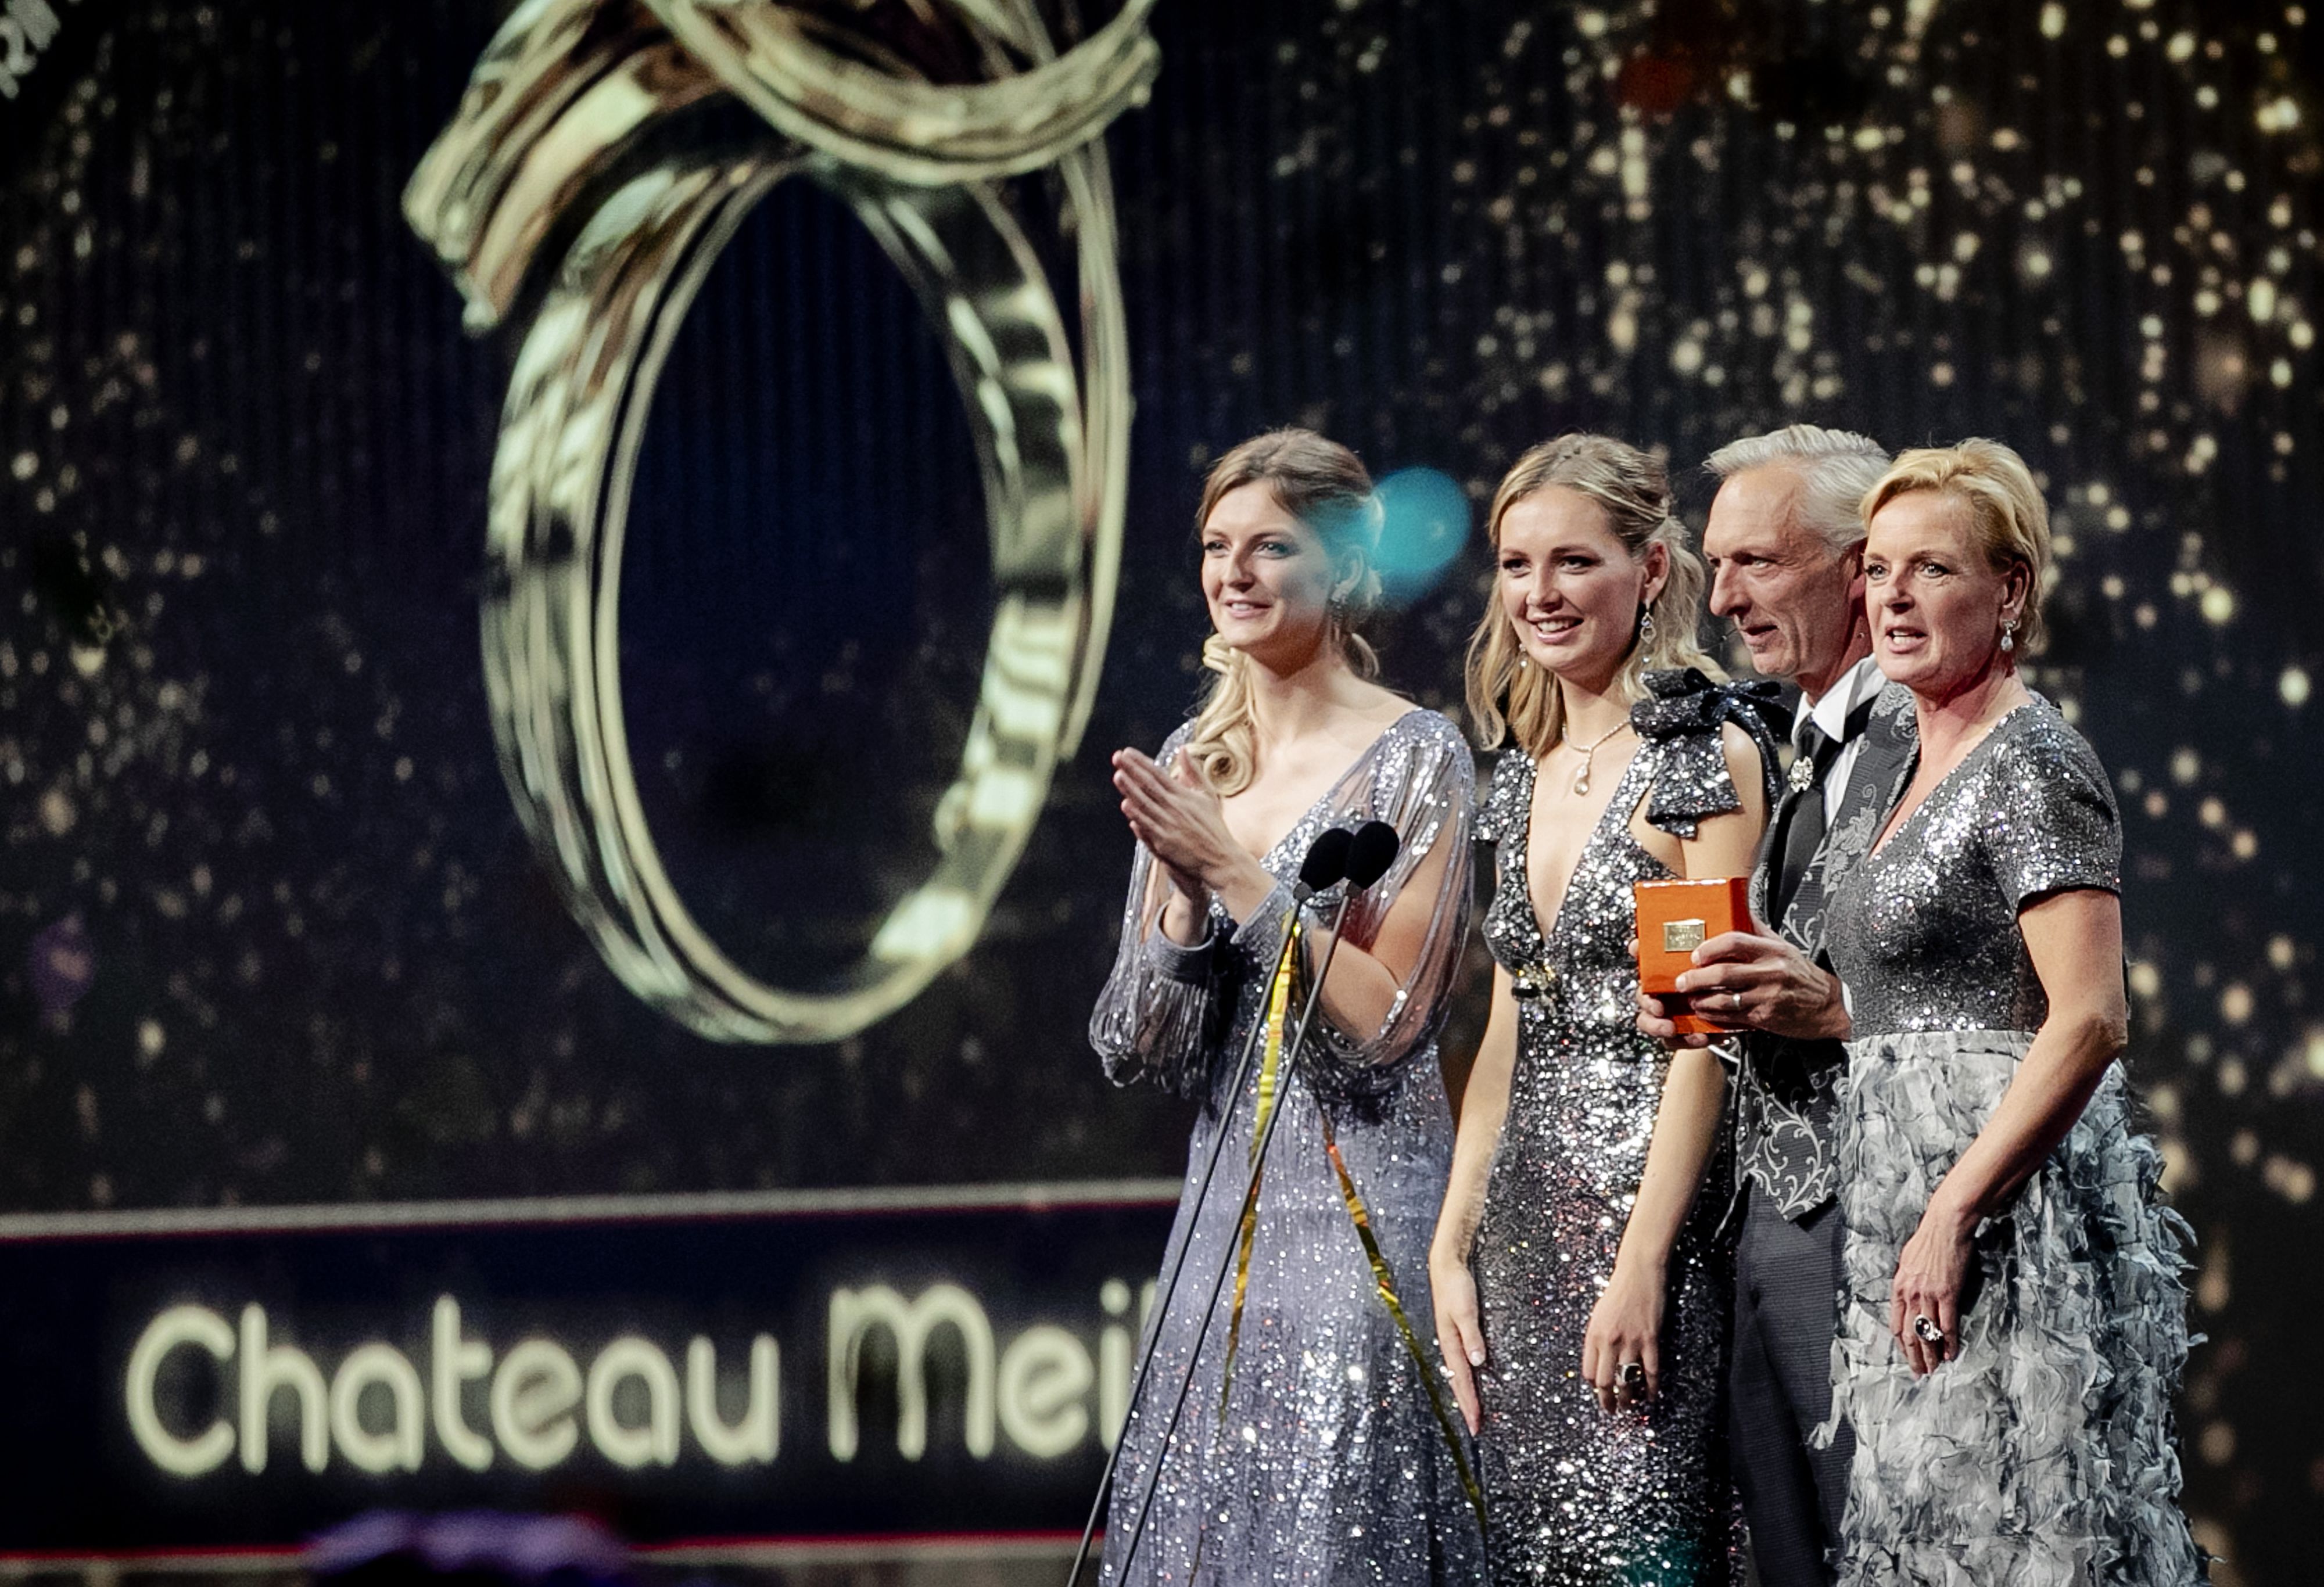 Gouden Televizier-Ring Gala: de gelukkige winnaars